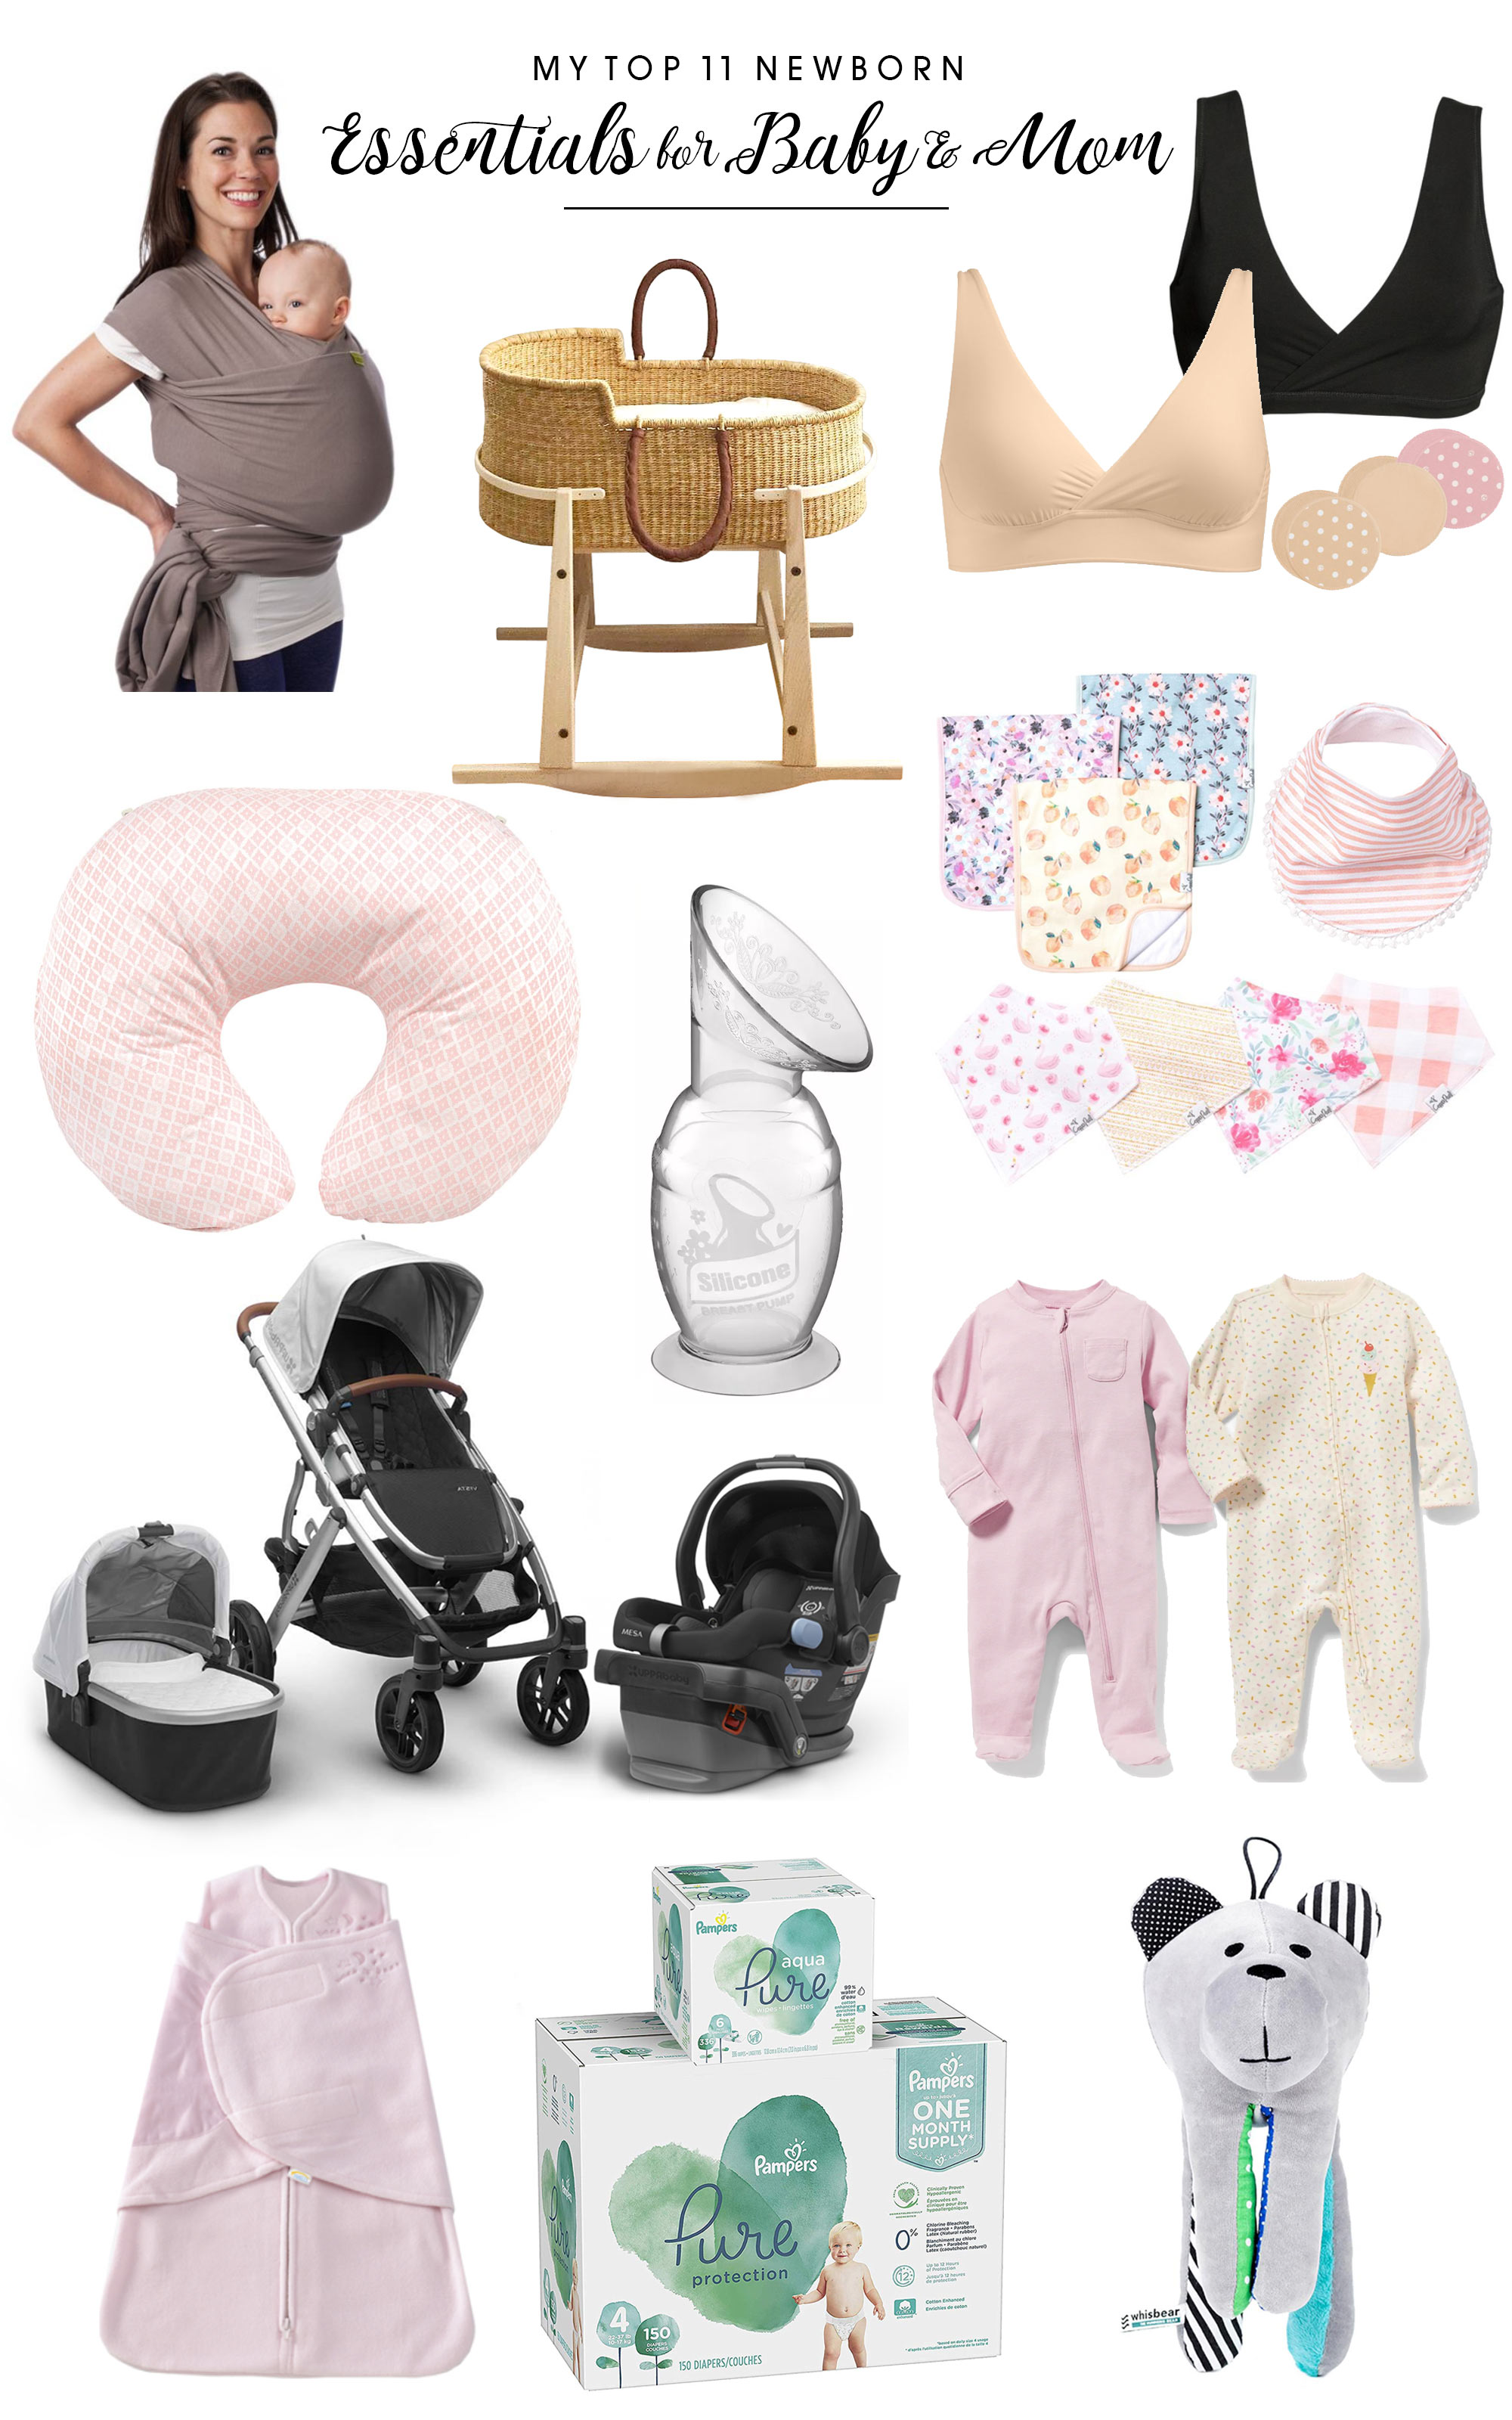 https://brittanystager.com/wp-content/uploads/2019/04/Newborn-Baby-Essentials-2019.jpg